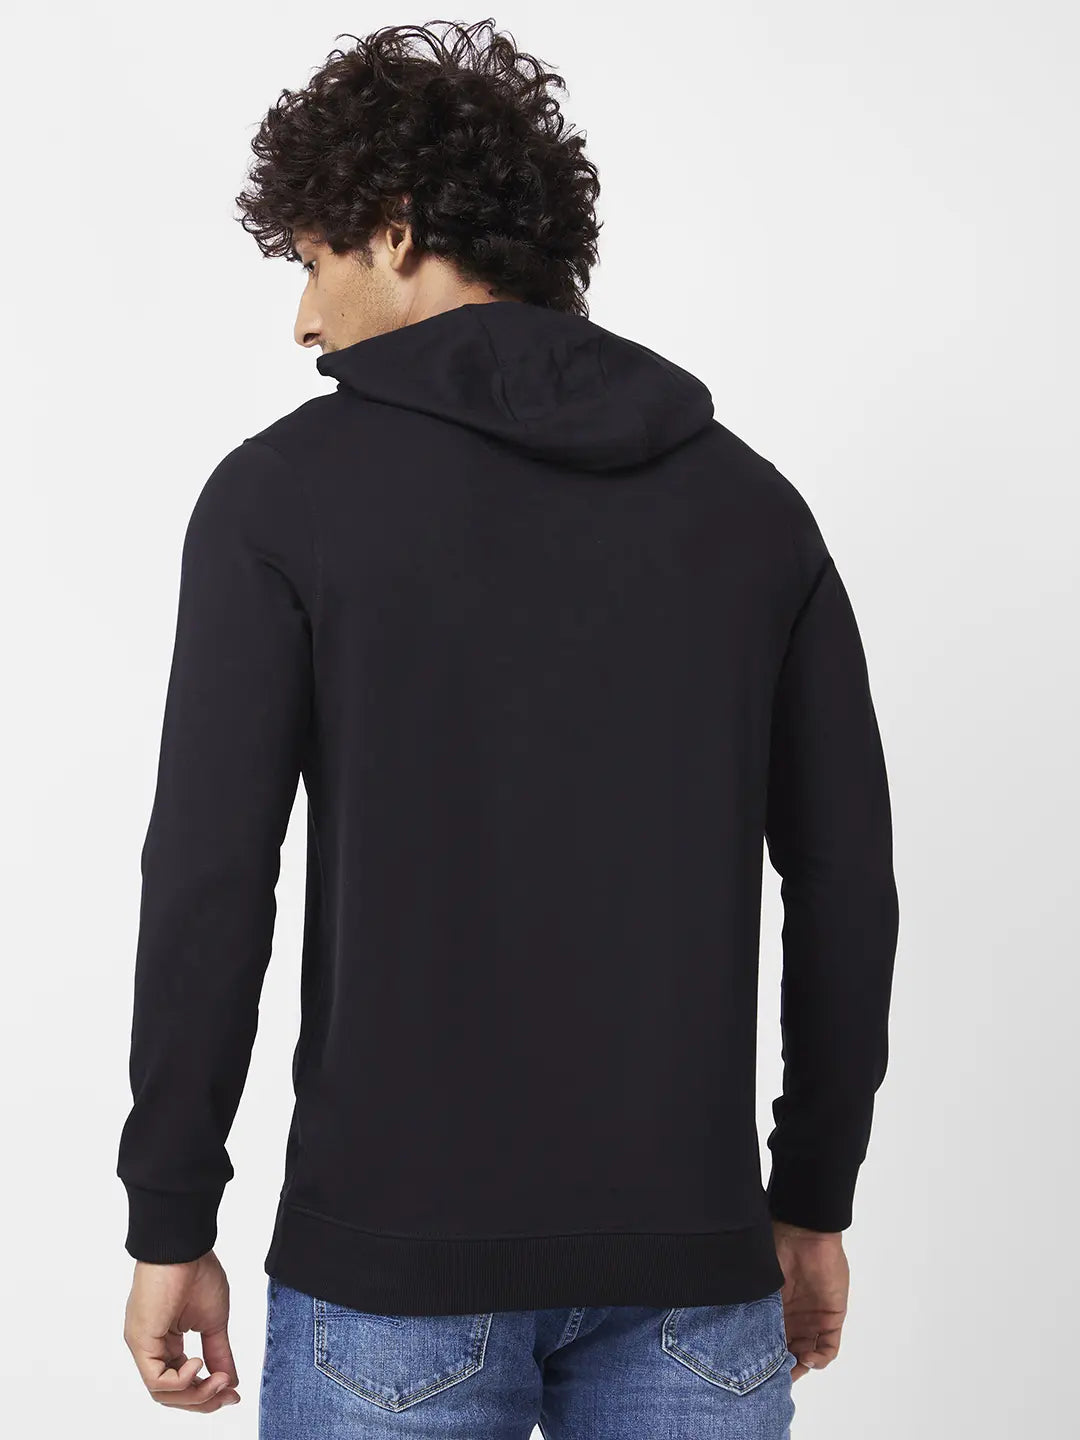 Spykar Men Black Blended Regular FIt Full Sleeve Hooded Plain Sweatshirt